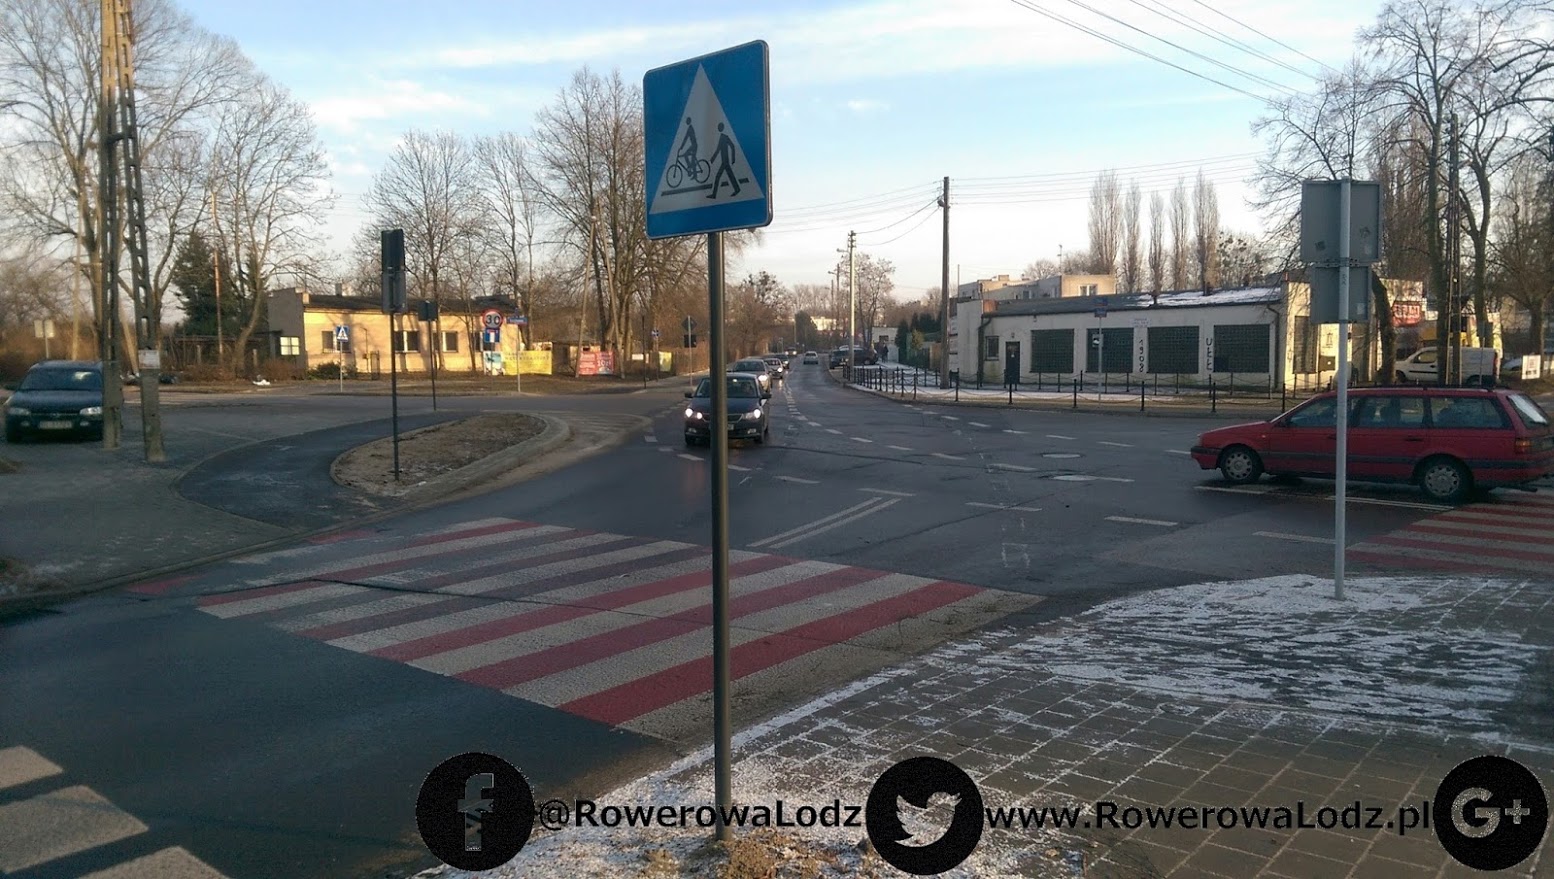 Skrzyżowanie z ul. Borową. Znaki pionowe mówią o przejeździe, którego jeszcze nie wymalowano.